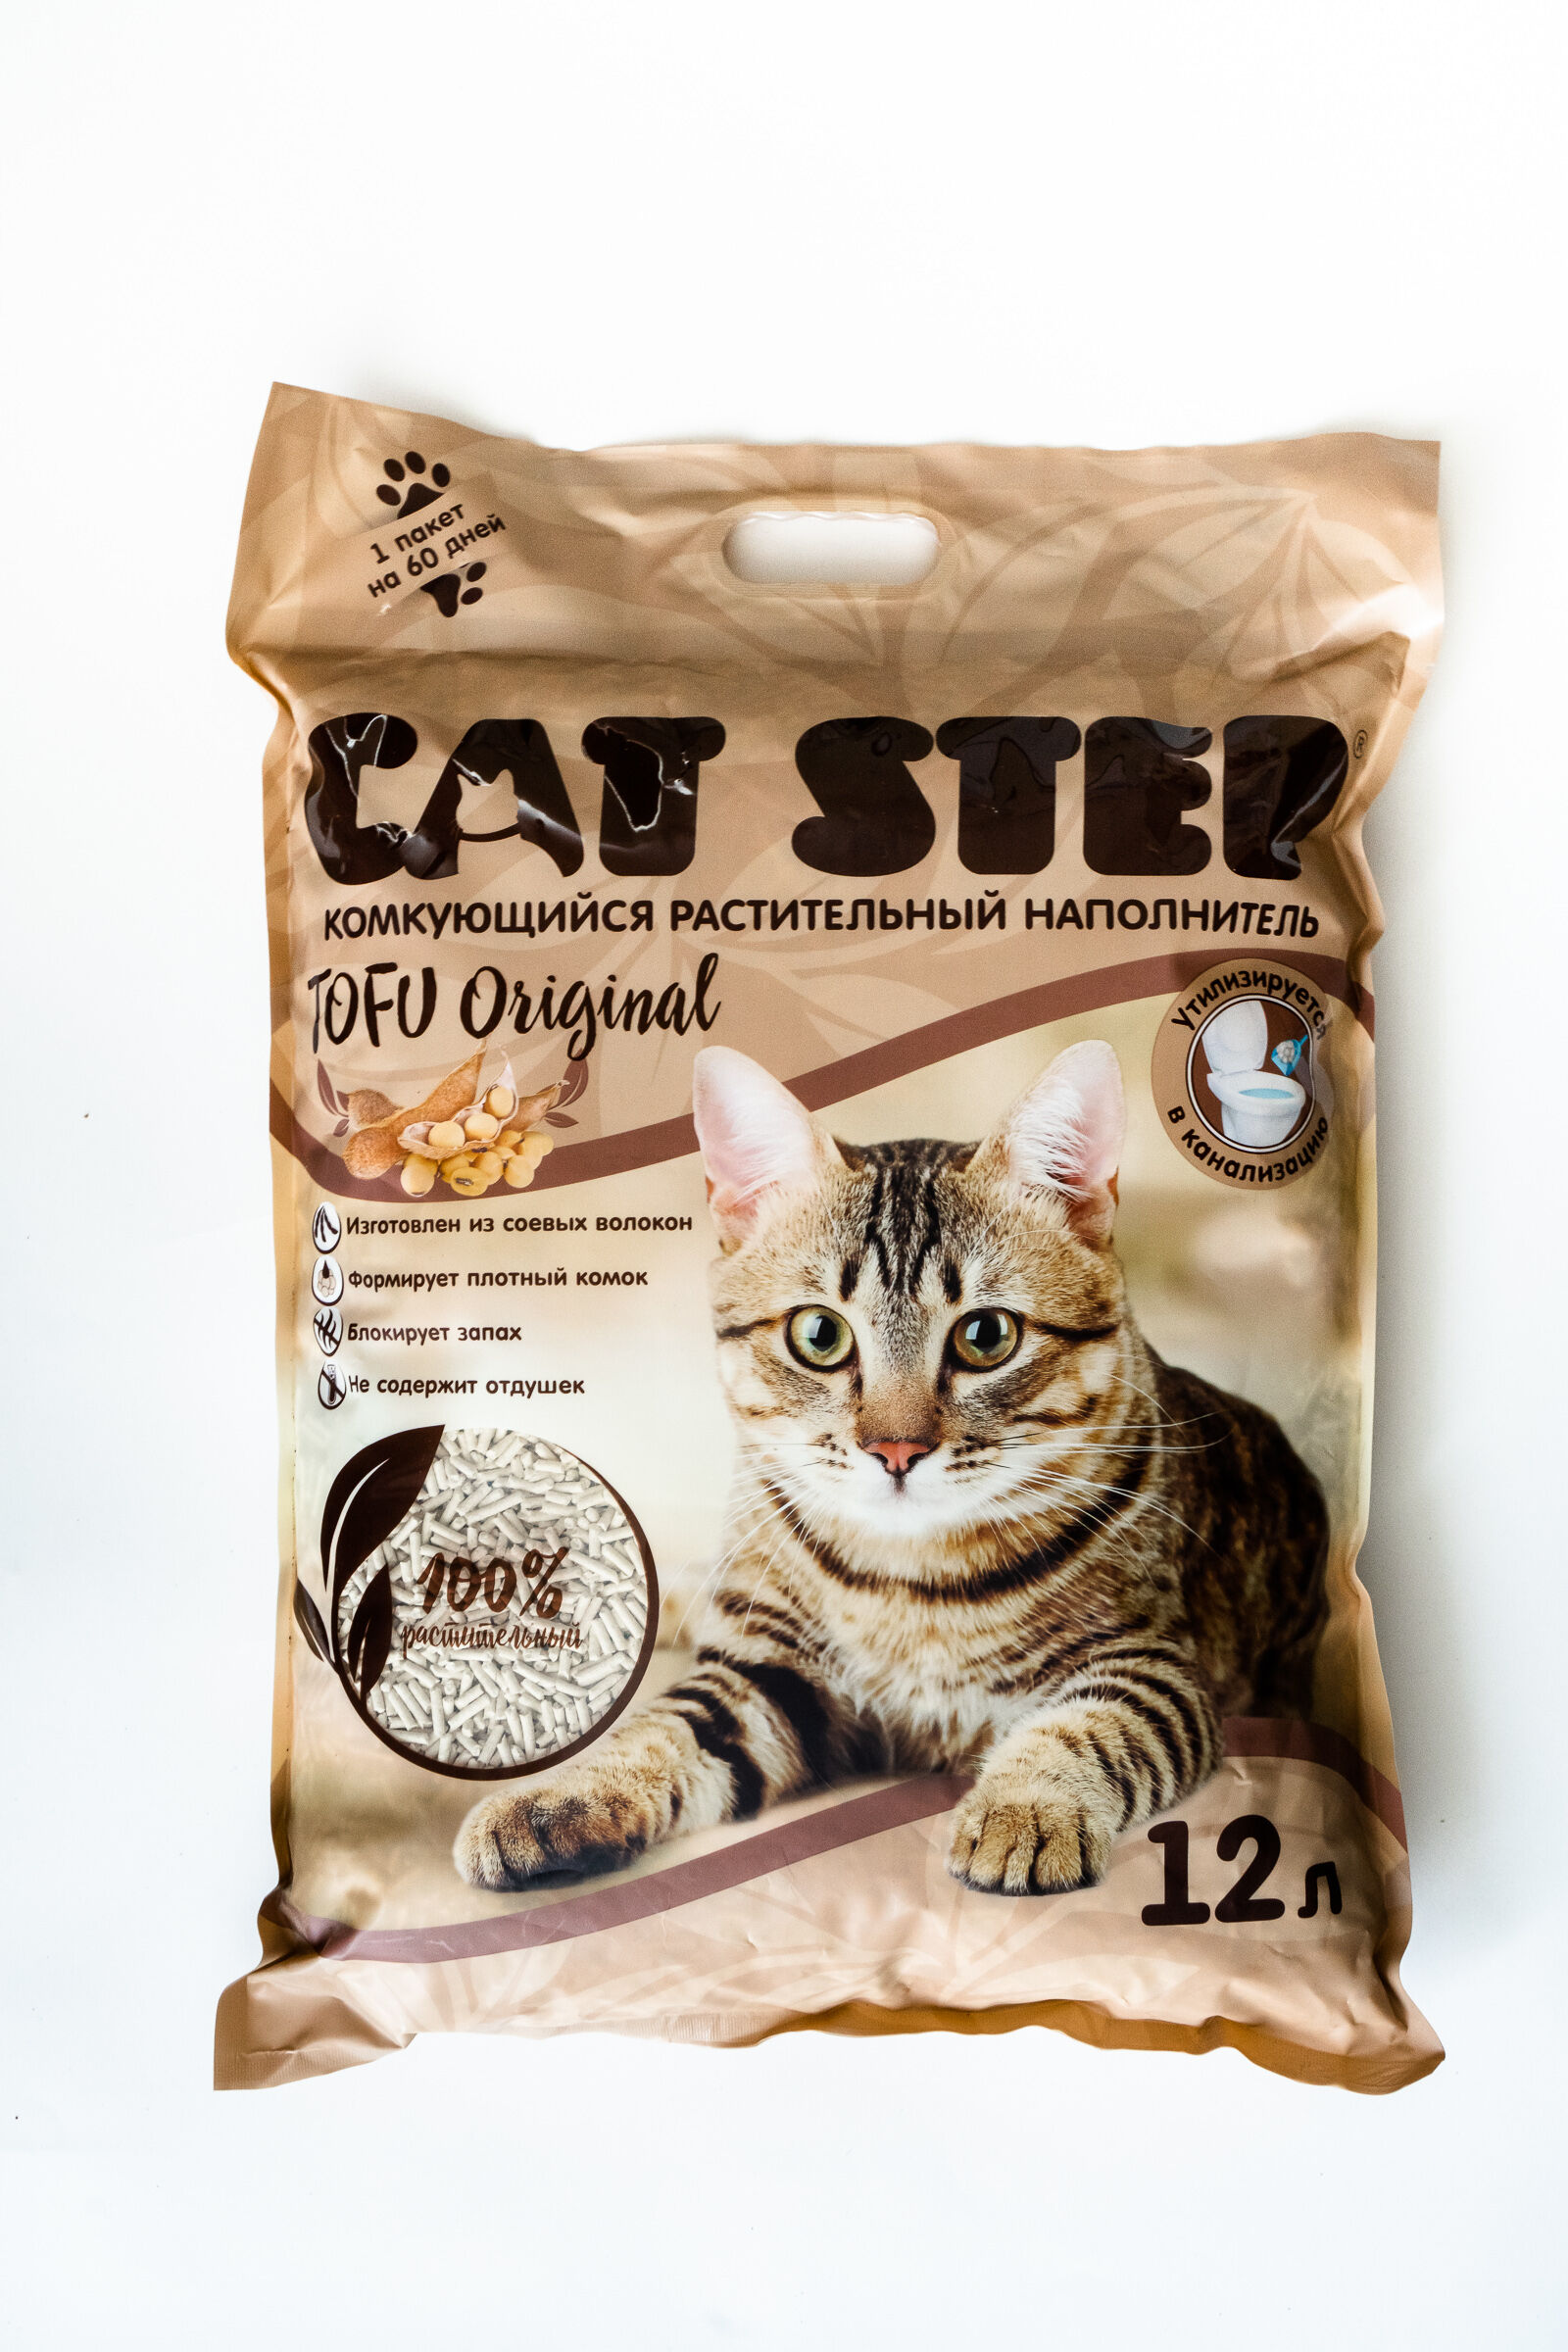 Наполнитель комкующийся растительный CAT STEP Tofu Original,12л